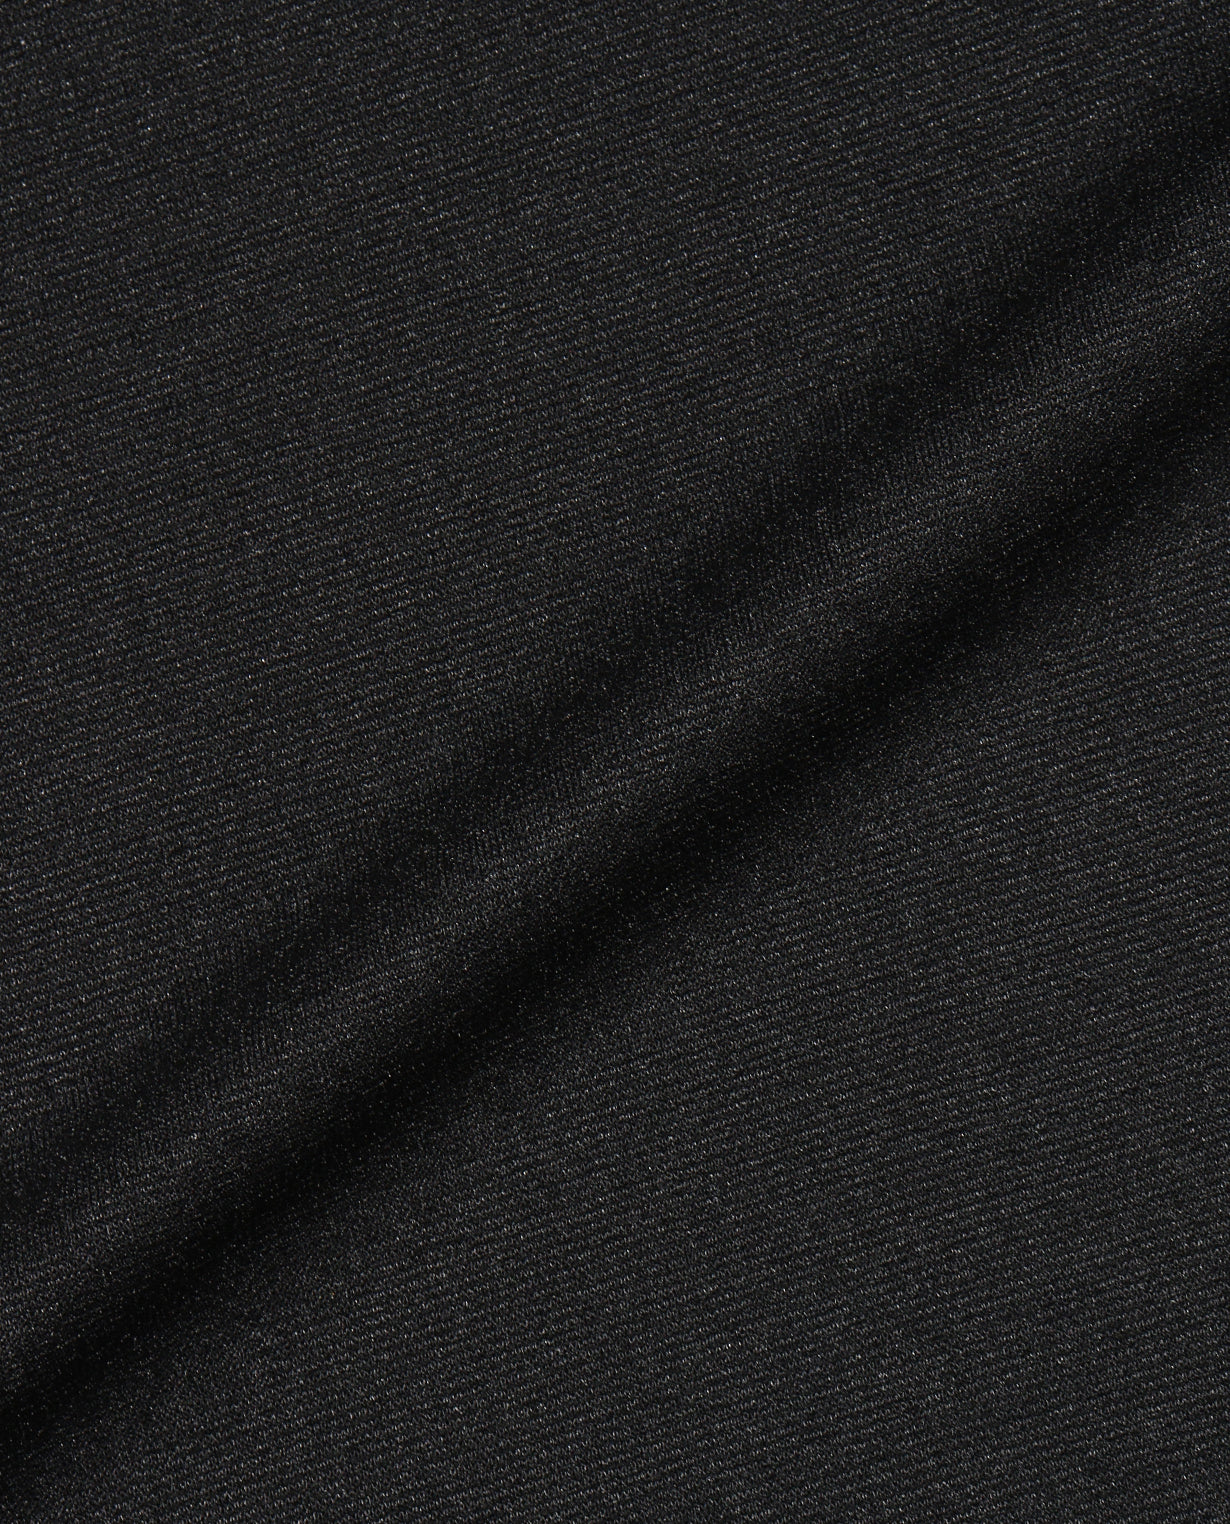 【NEW!】■ブラック 0_0303_E 半袖ポロシャツ